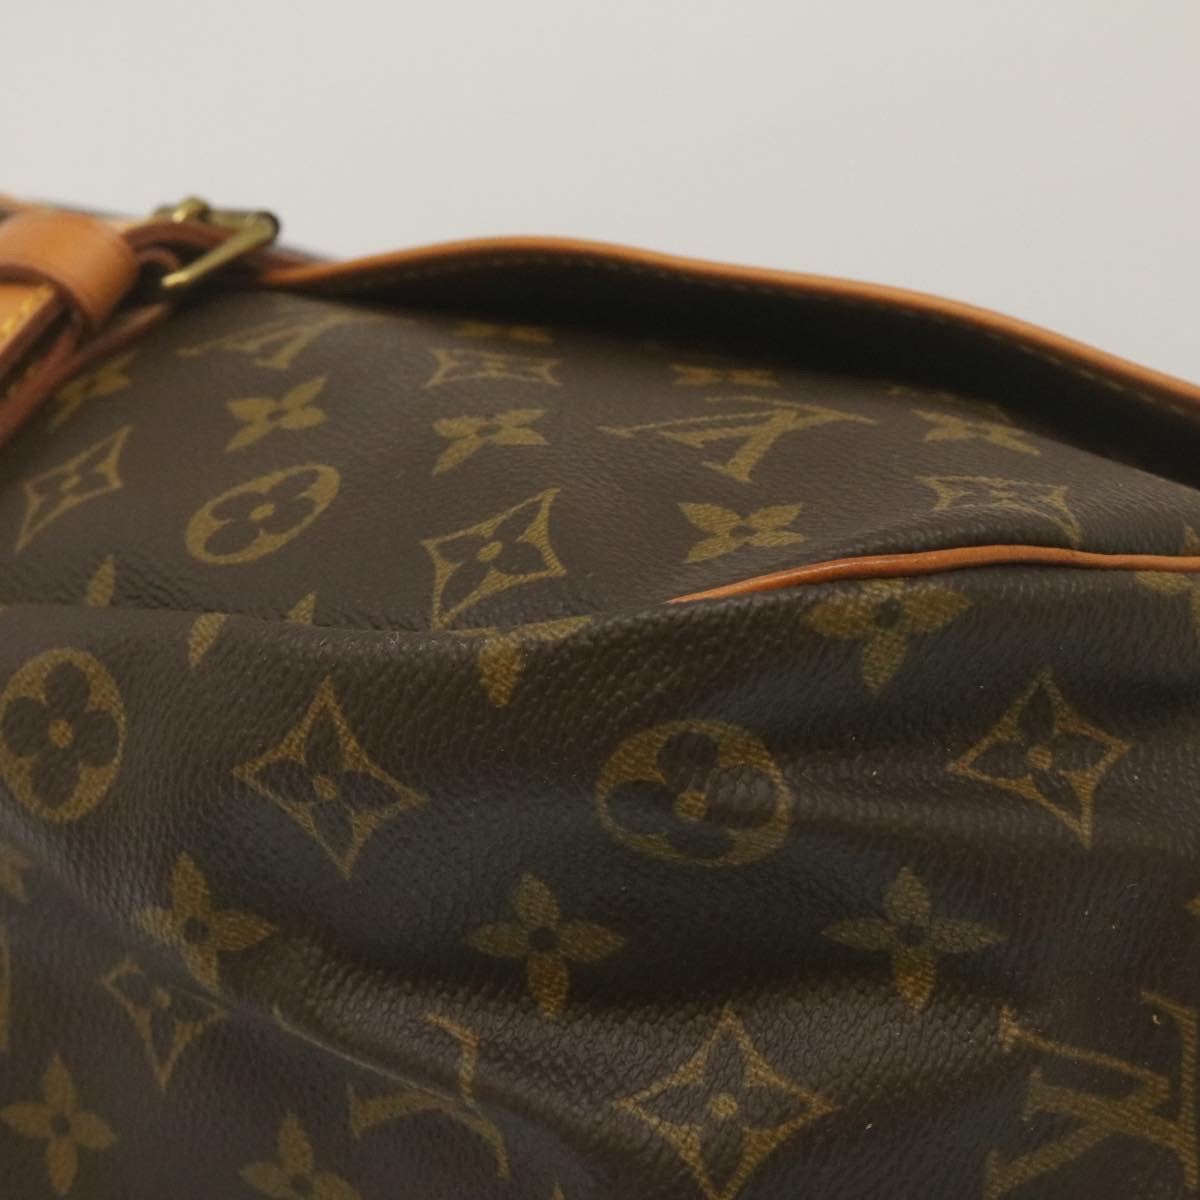 Louis Vuitton Saumur 35 Shoulder Bag Purse Monogram Canvas M42254 AR0942  180199